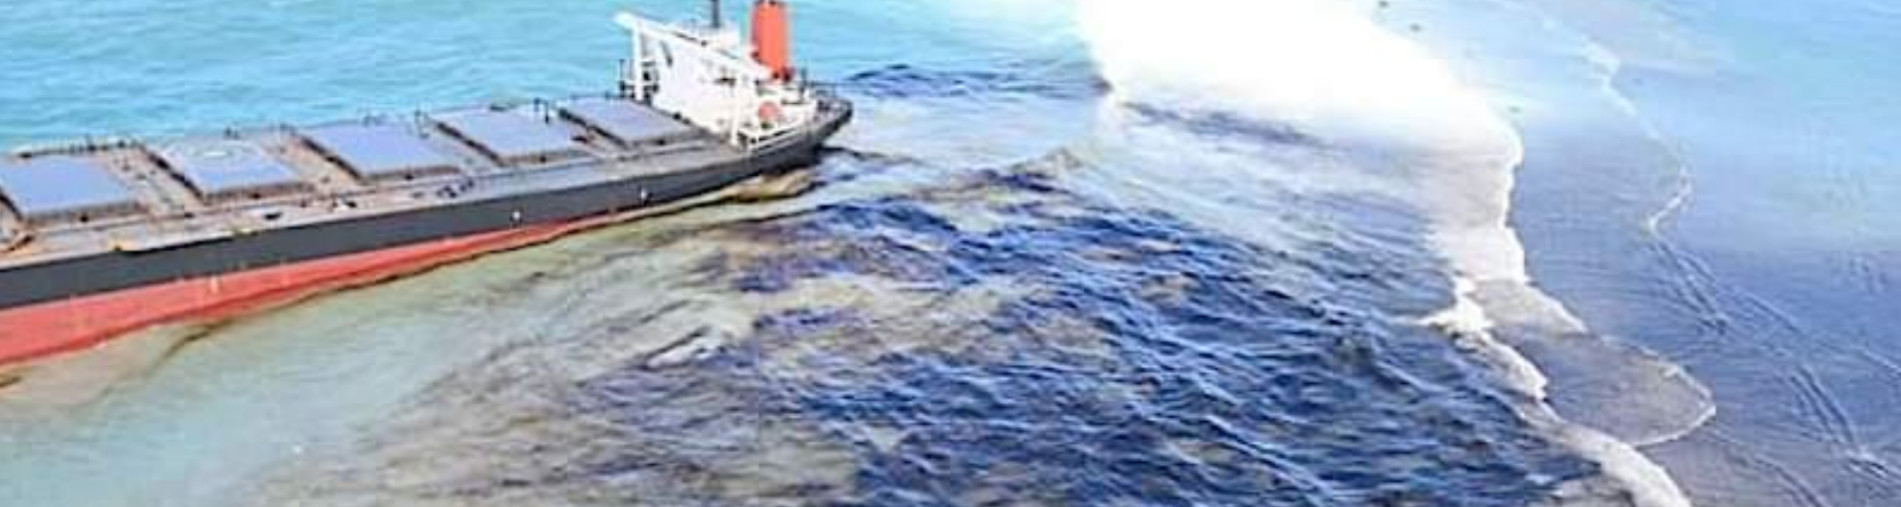 Save the coast of Mauritius- Wakashio Oil Spill